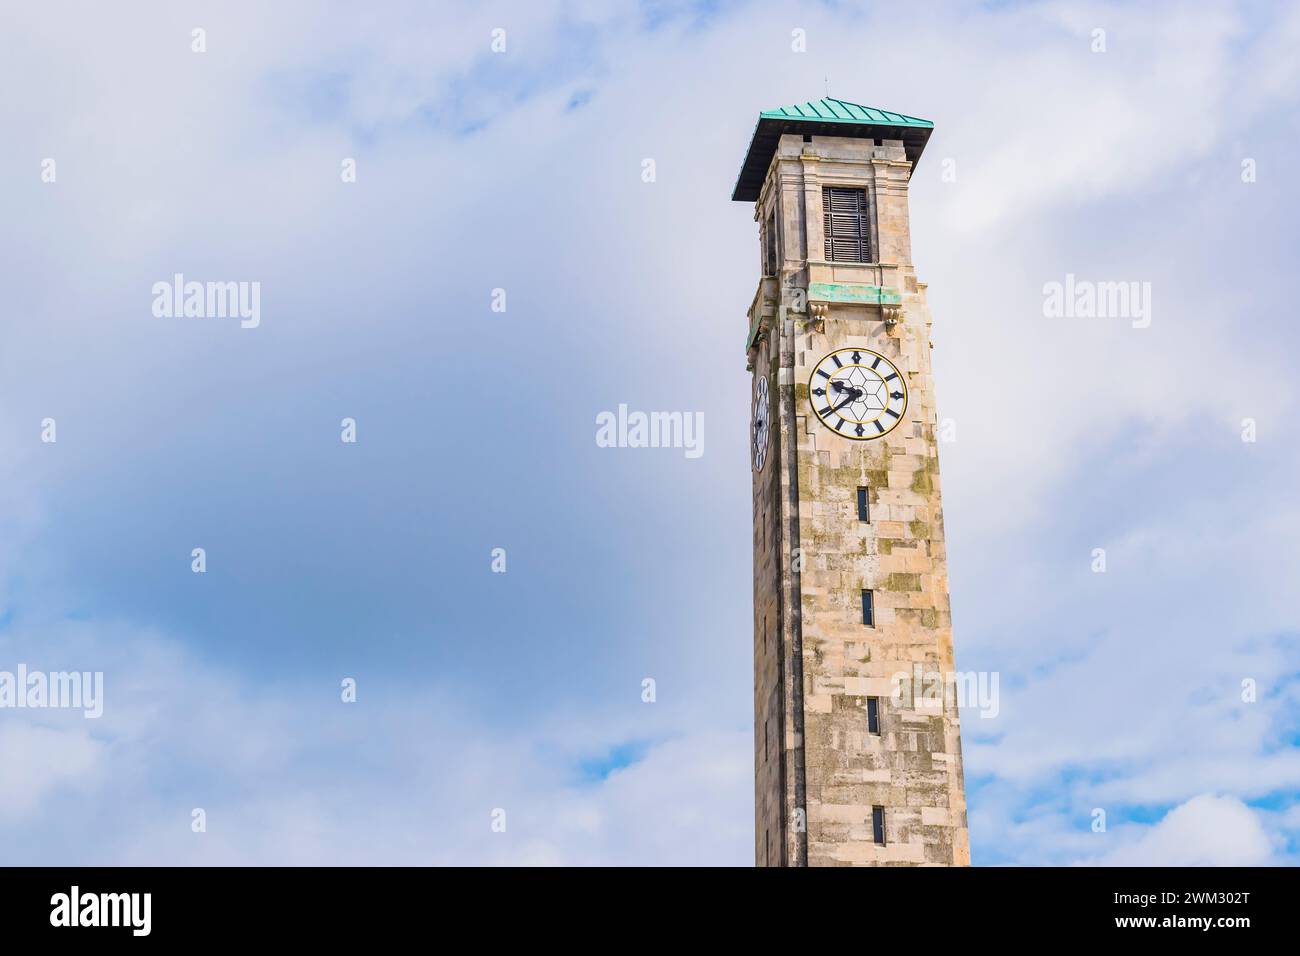 La Torre de Kimber. Torre de reloj de piedra en el Centro Cívico diseñada por el arquitecto Ernest Berry Webber. Southampton, Hampshire, Inglaterra, Reino Unido, Reino Unido, euro Foto de stock